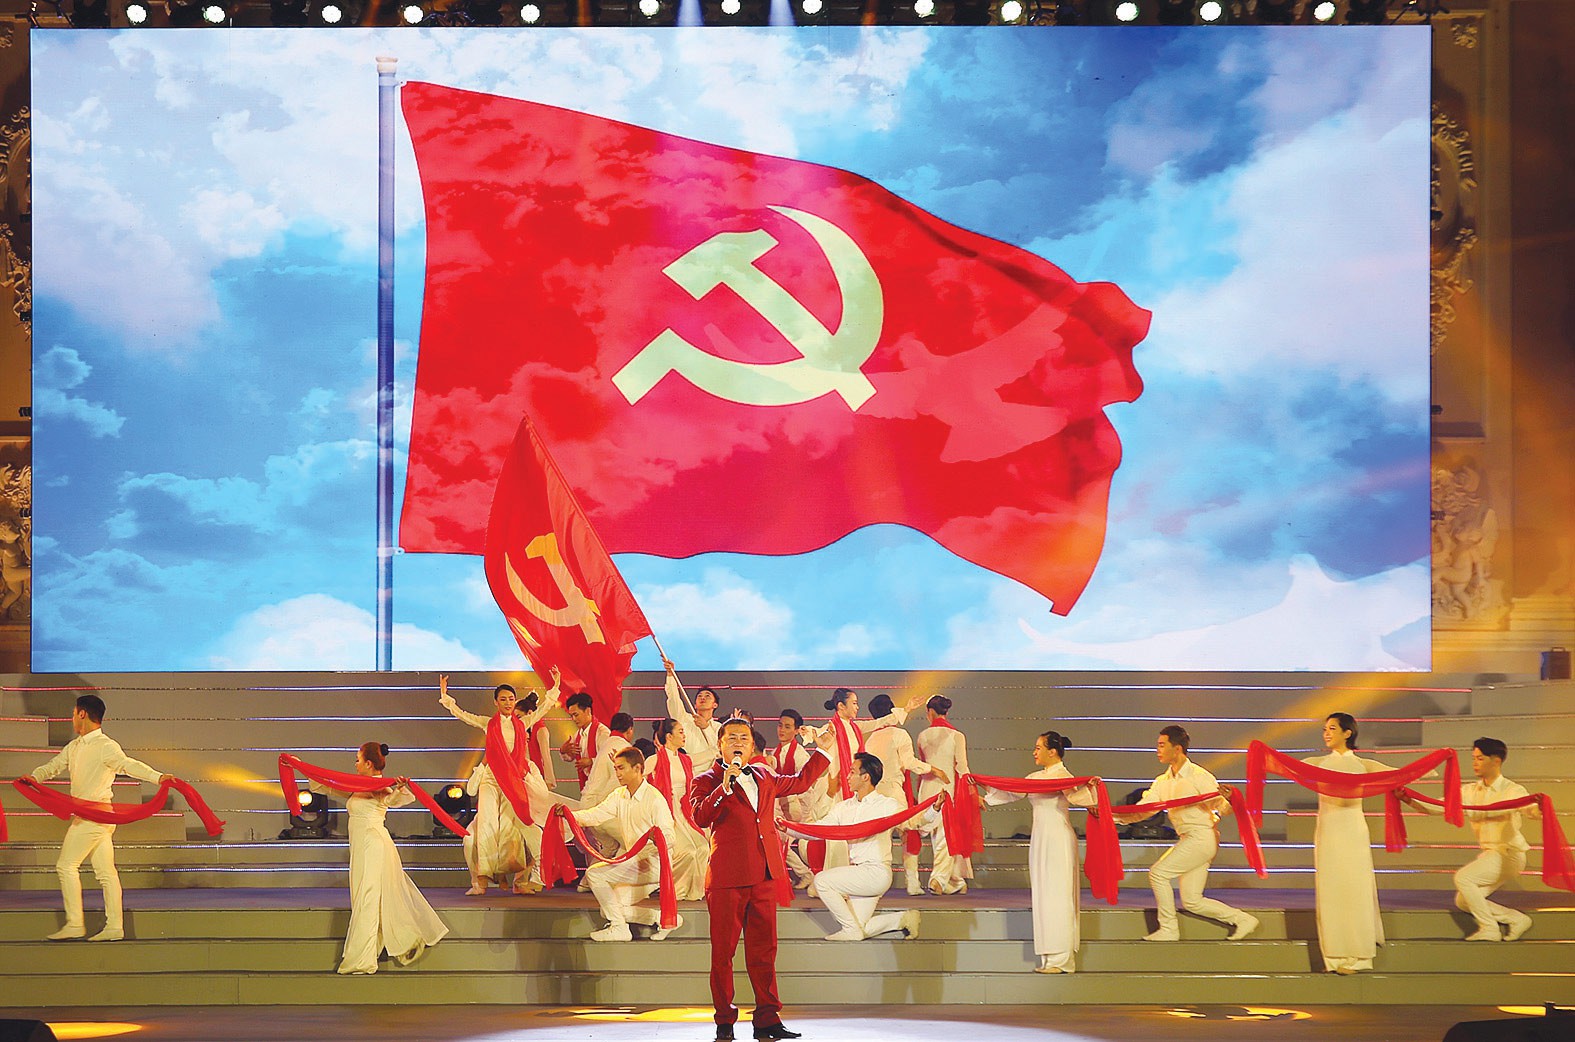 Đảng Cộng sản Việt Nam đã liên tục cải cách, đổi mới và phát triển bền vững trong suốt hơn 90 năm qua. Từng bước chinh phục các rào cản, hiện Đảng tự hào nằm trong số các Đảng lớn và có ảnh hưởng nhất trên toàn thế giới. Hãy cùng nhau xem ảnh liên quan để đón những thành công mới của Đảng năm 2024.